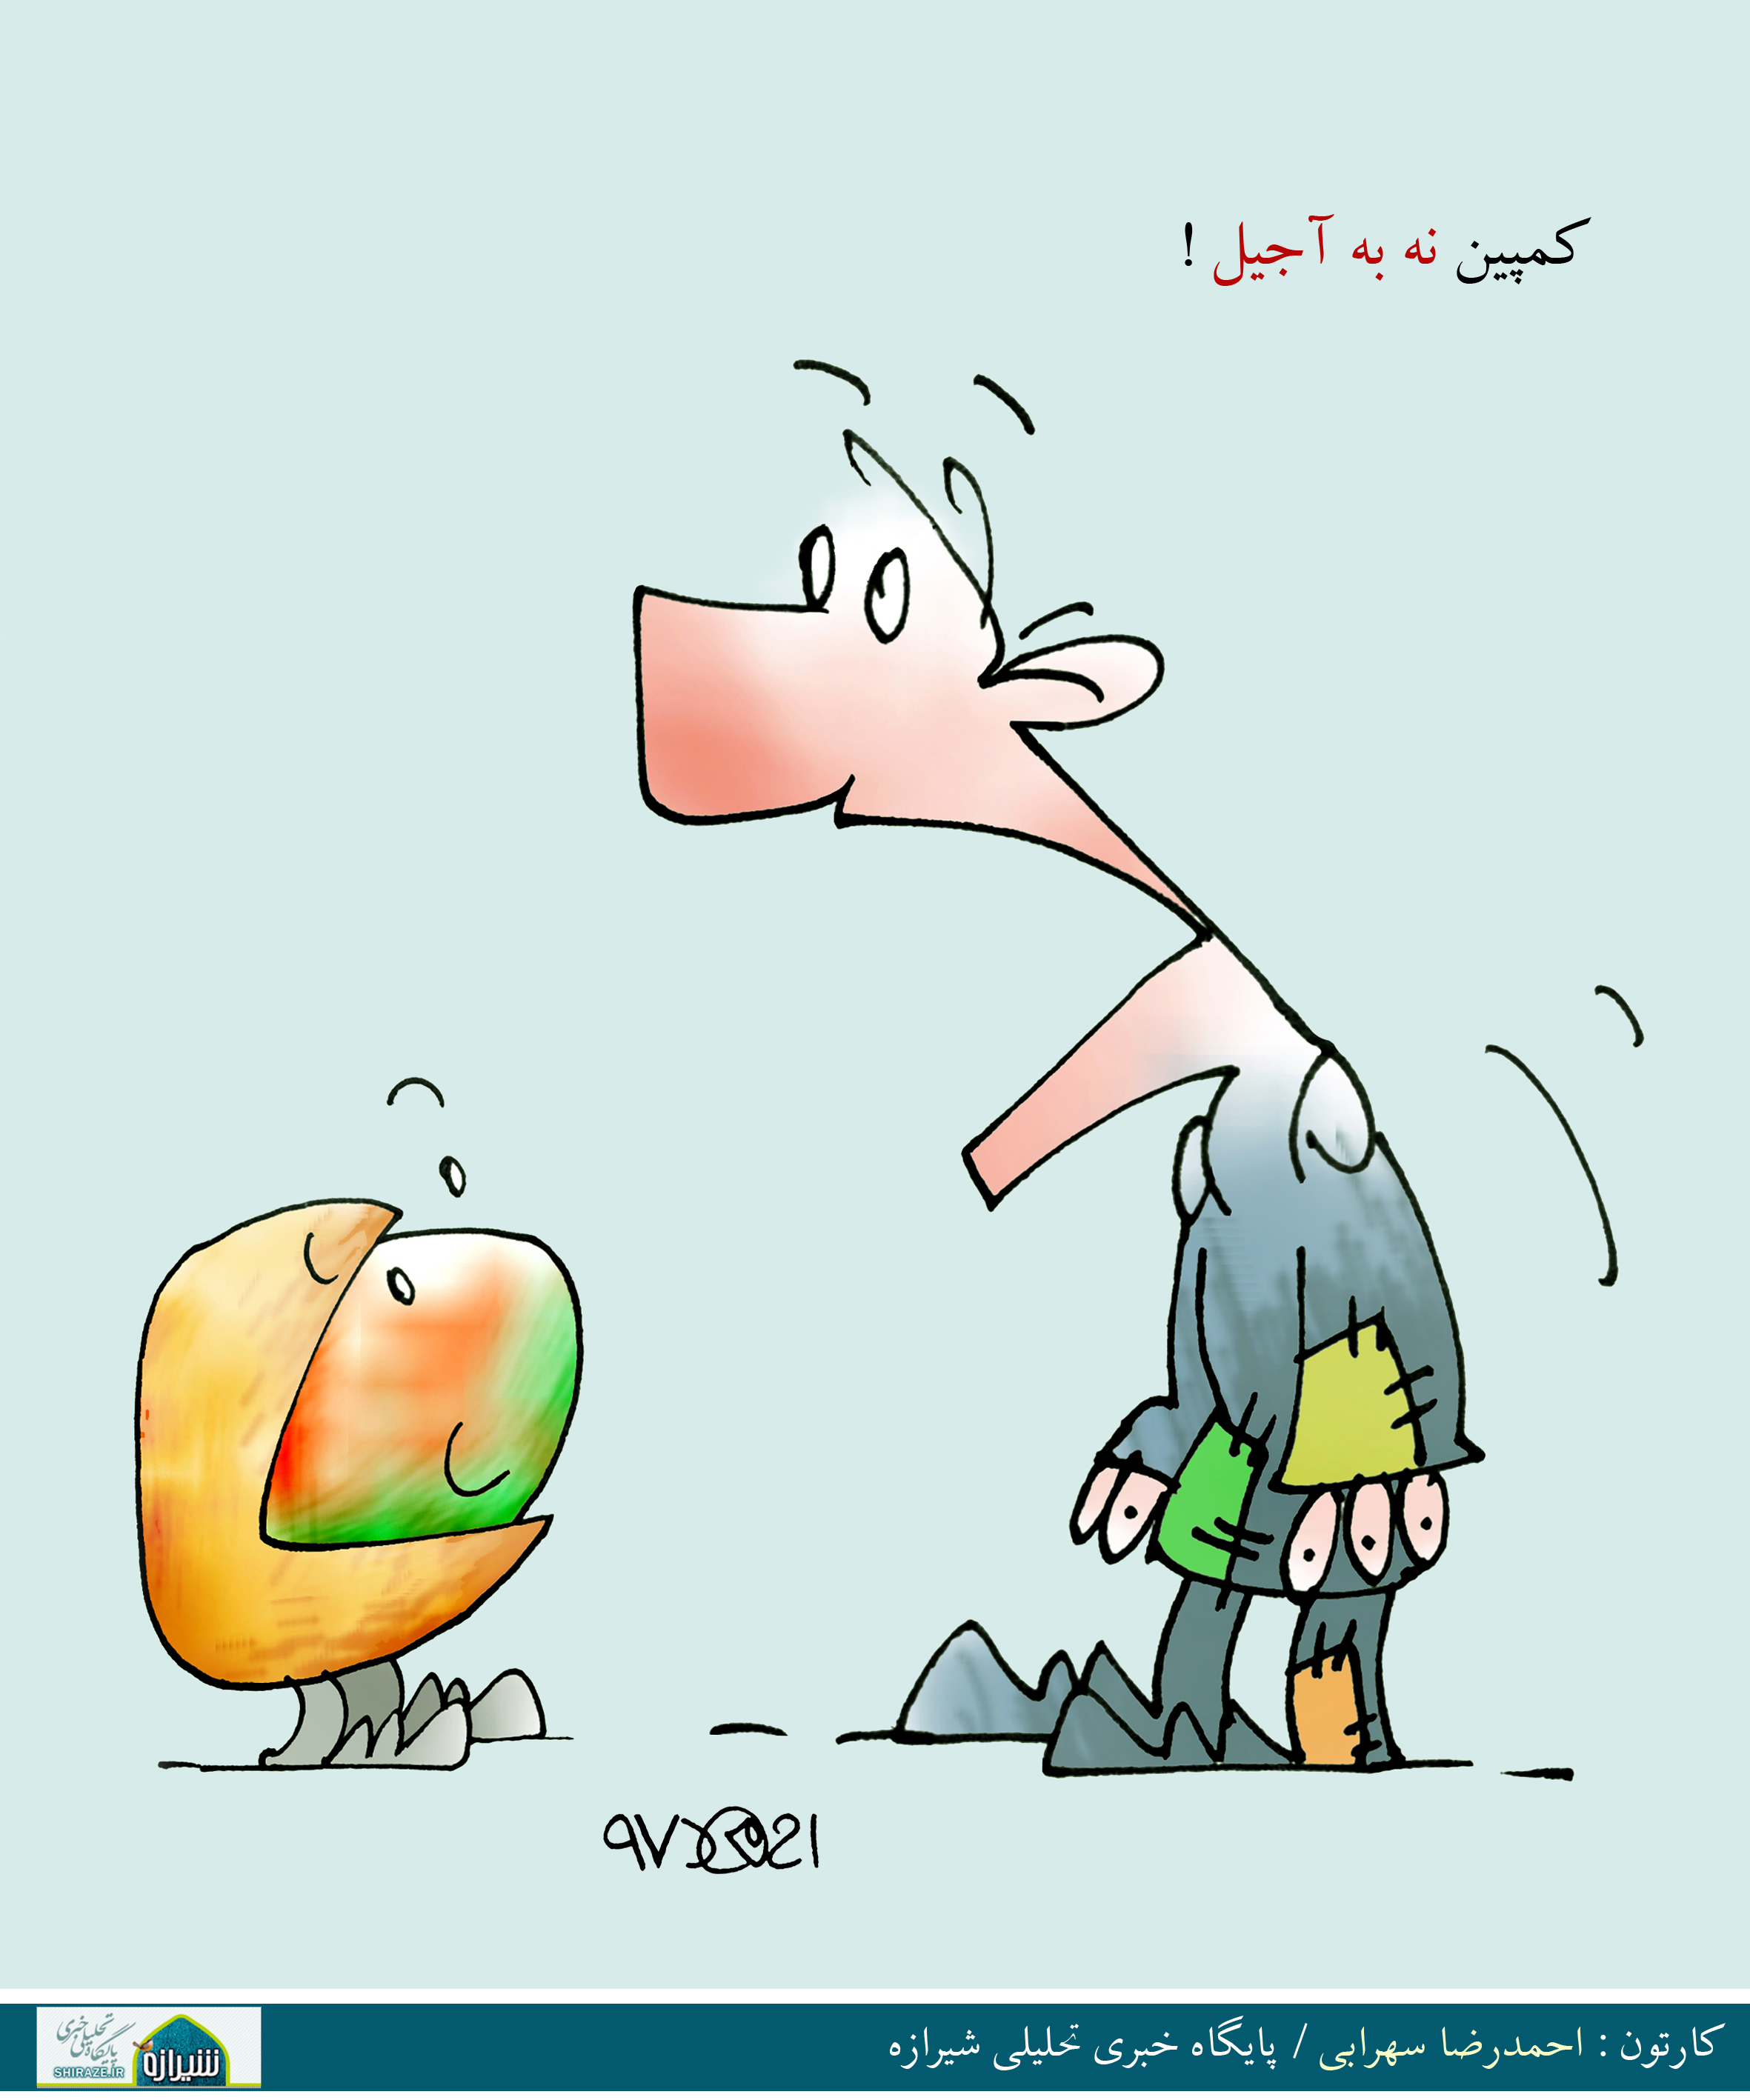 کاریکاتور شیرازه؛ کمپین نه به آجیل!